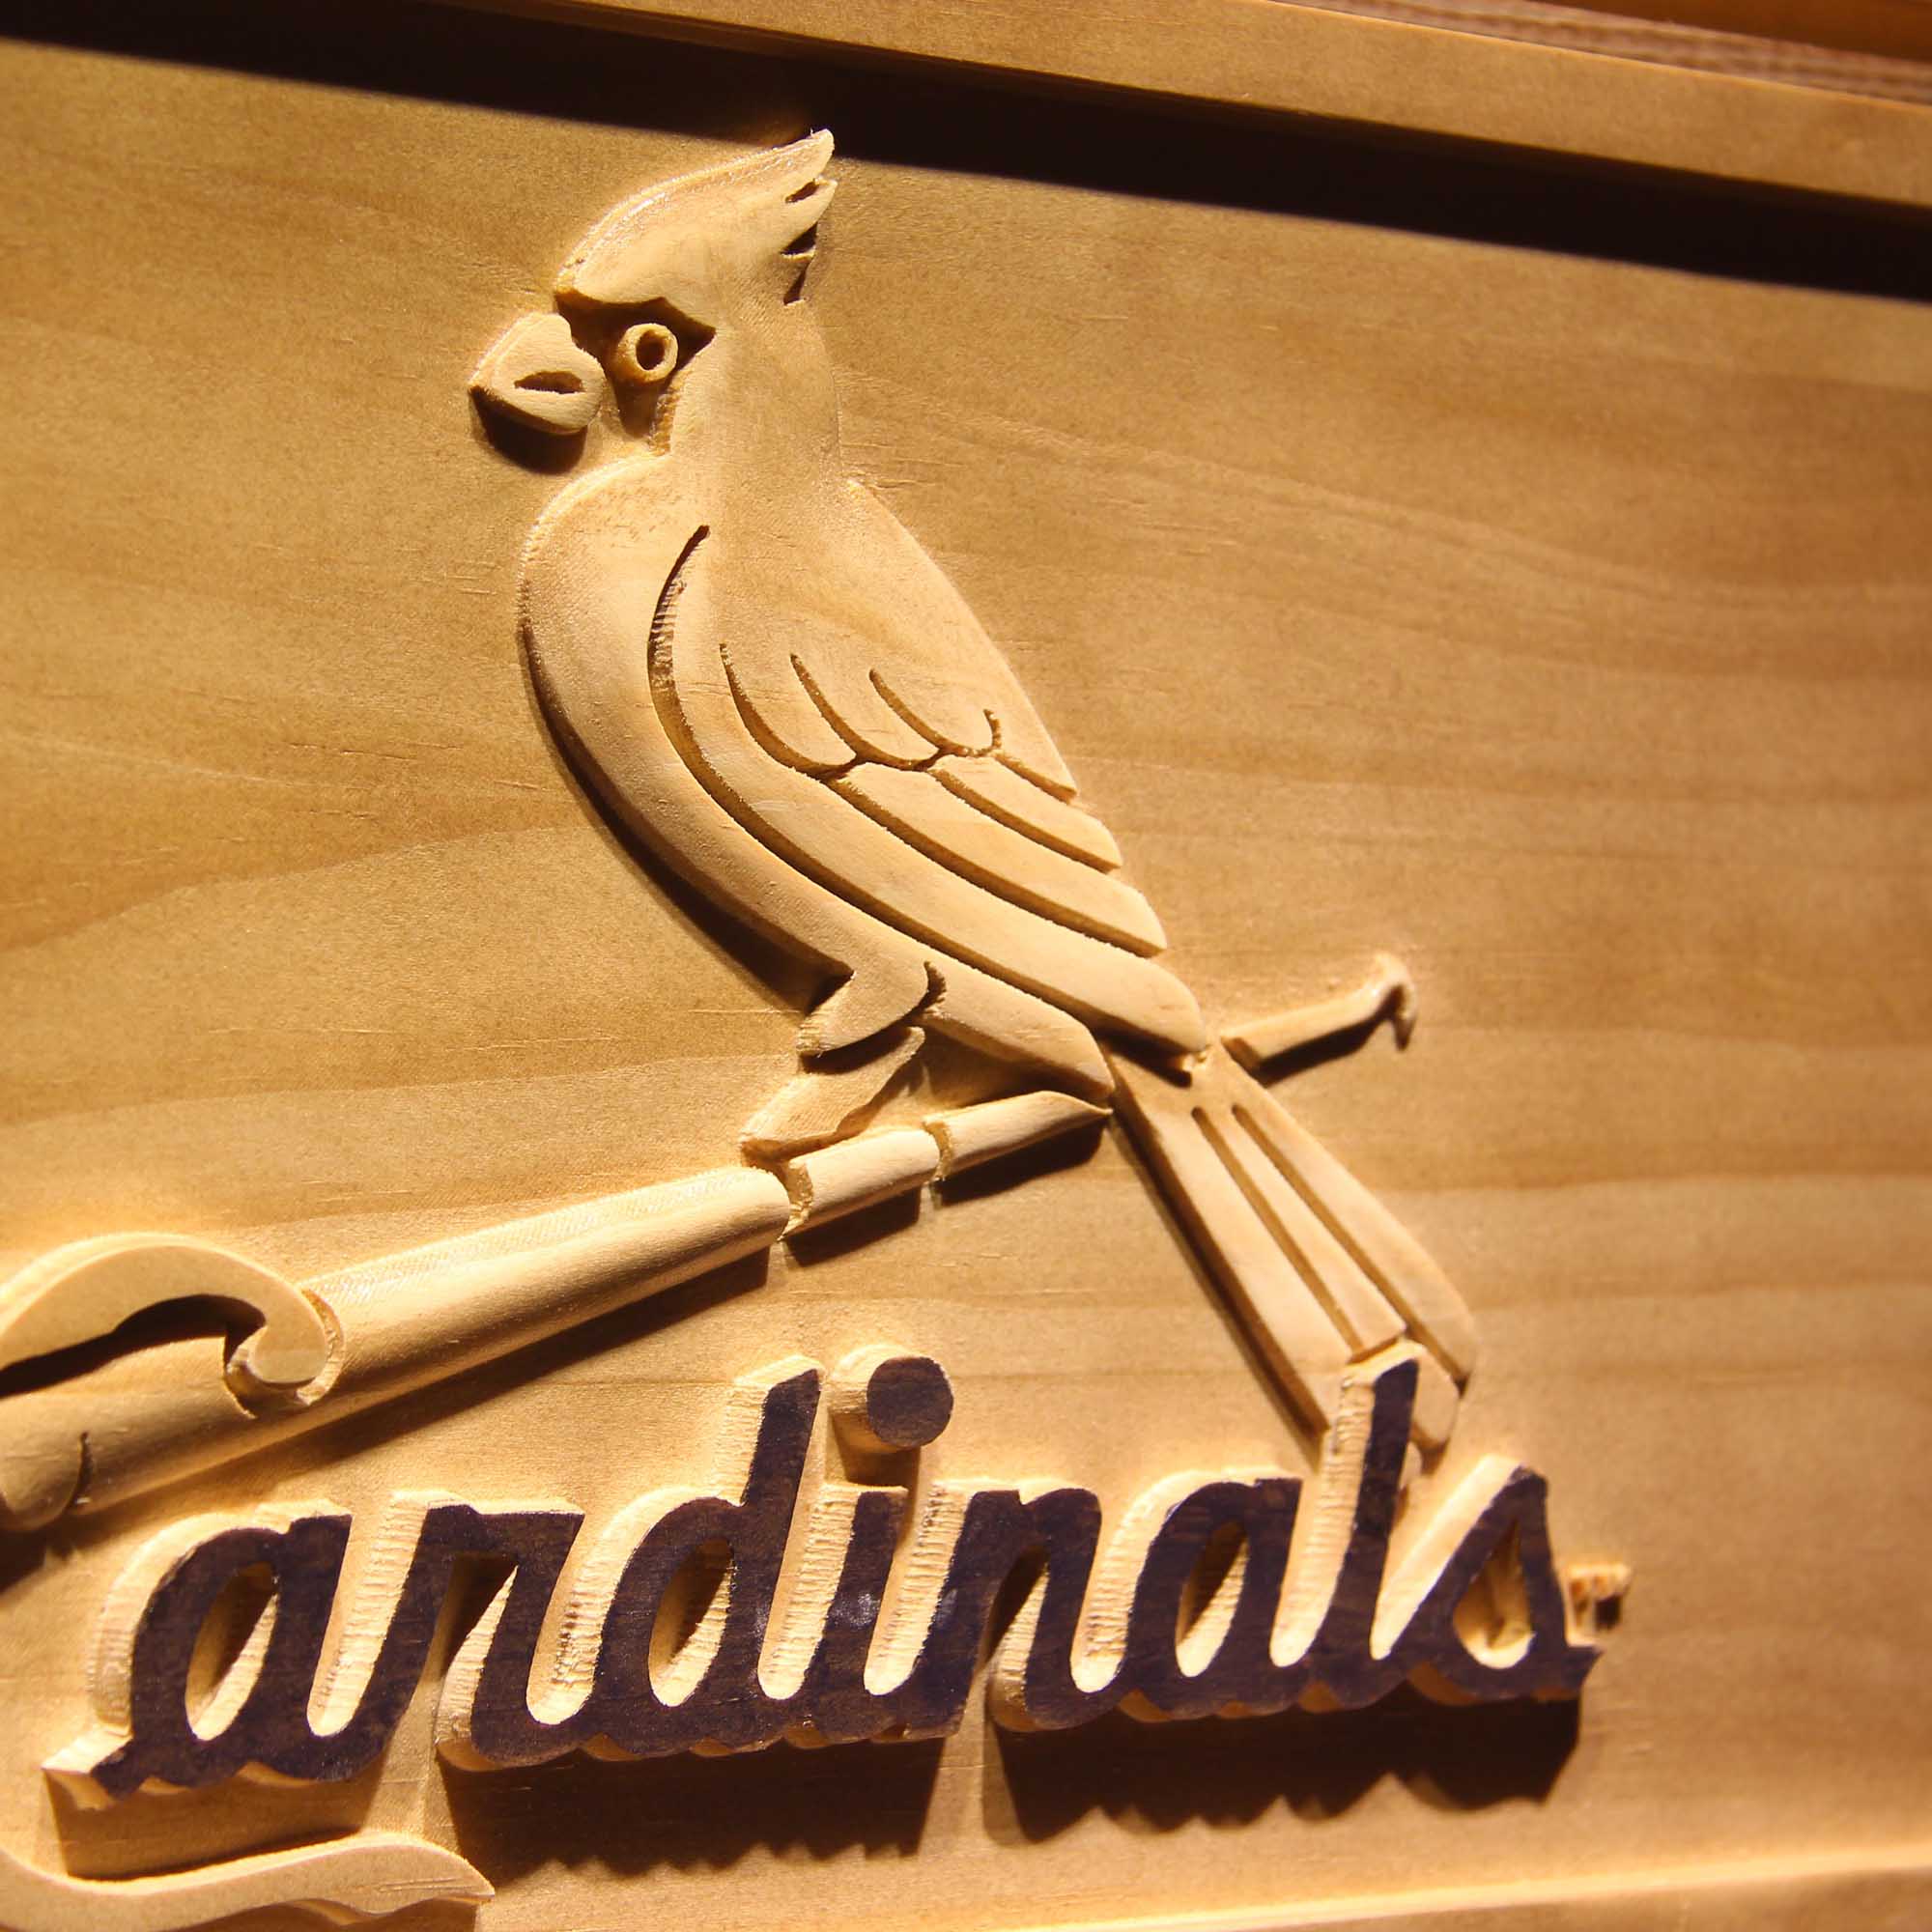 St. Louis Cardinals 3D Wooden Engrave Sign